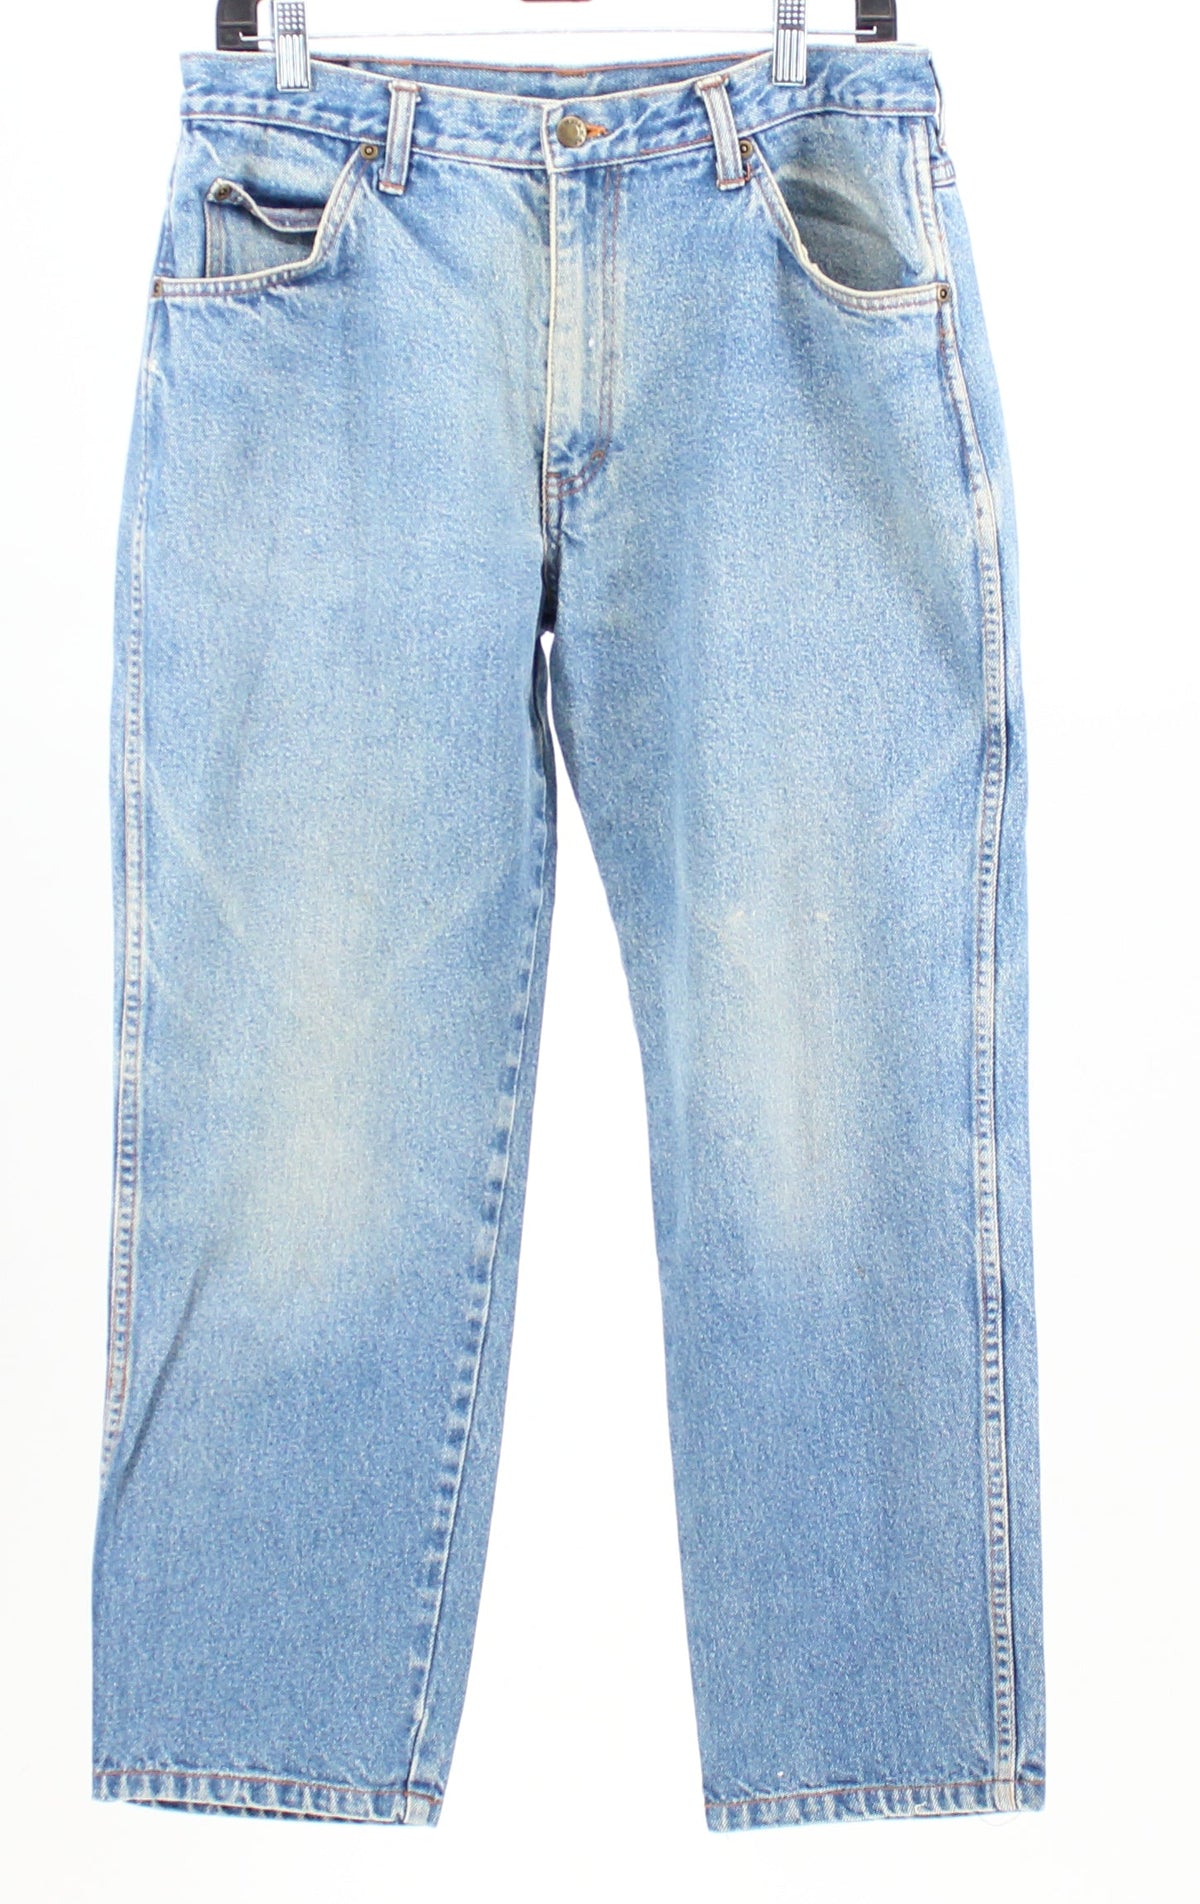 WorknSport Medium Washed Denim Jeans